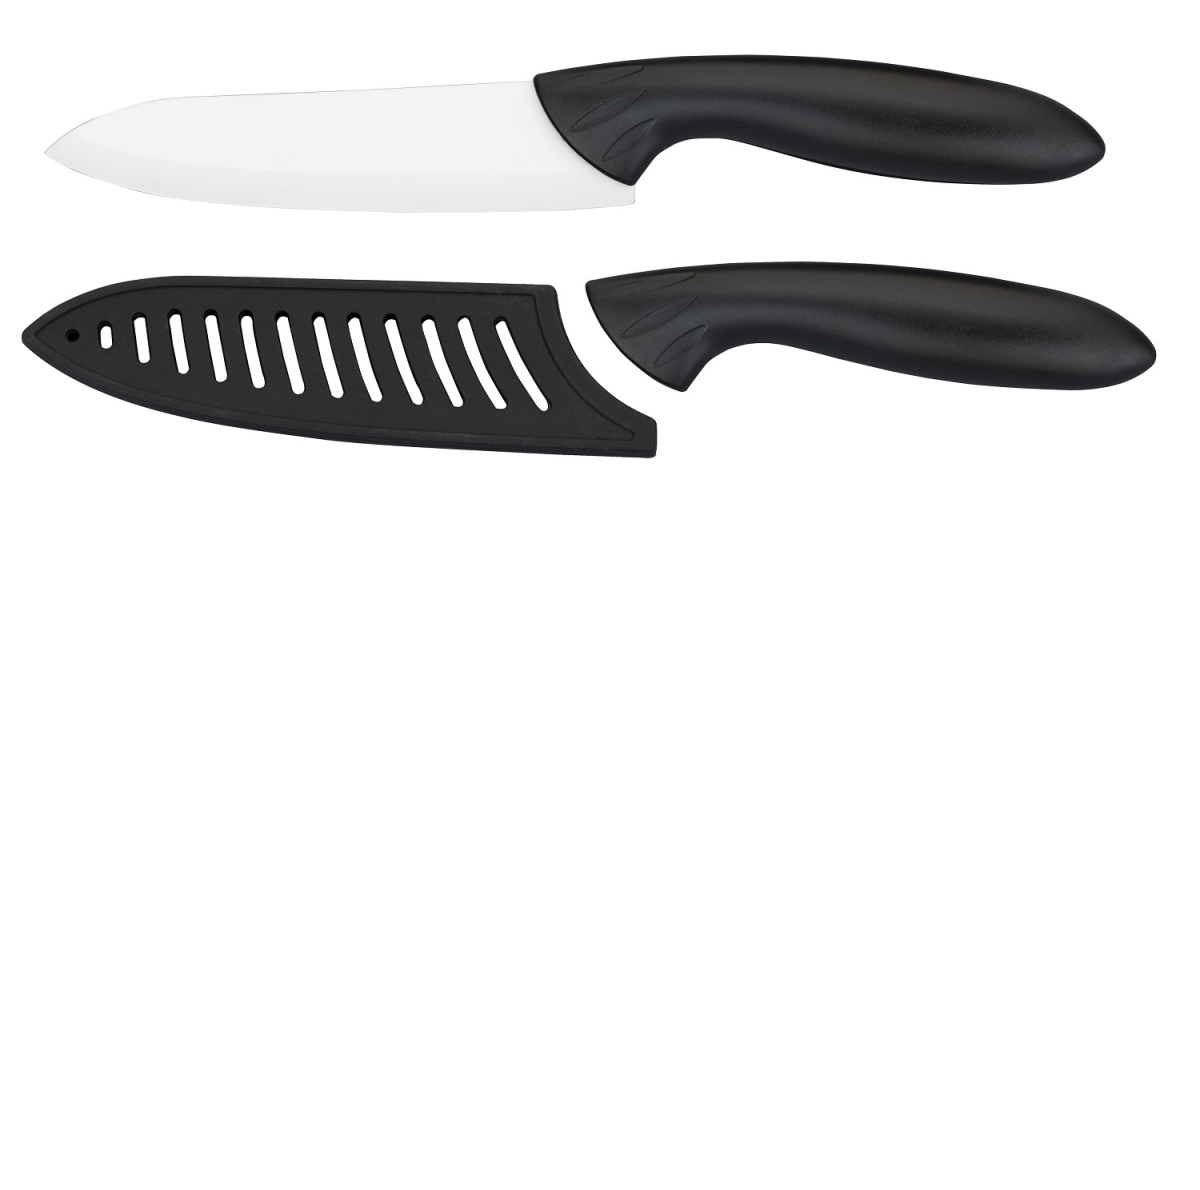 4017602 5 In. Ceramic Chef Knife